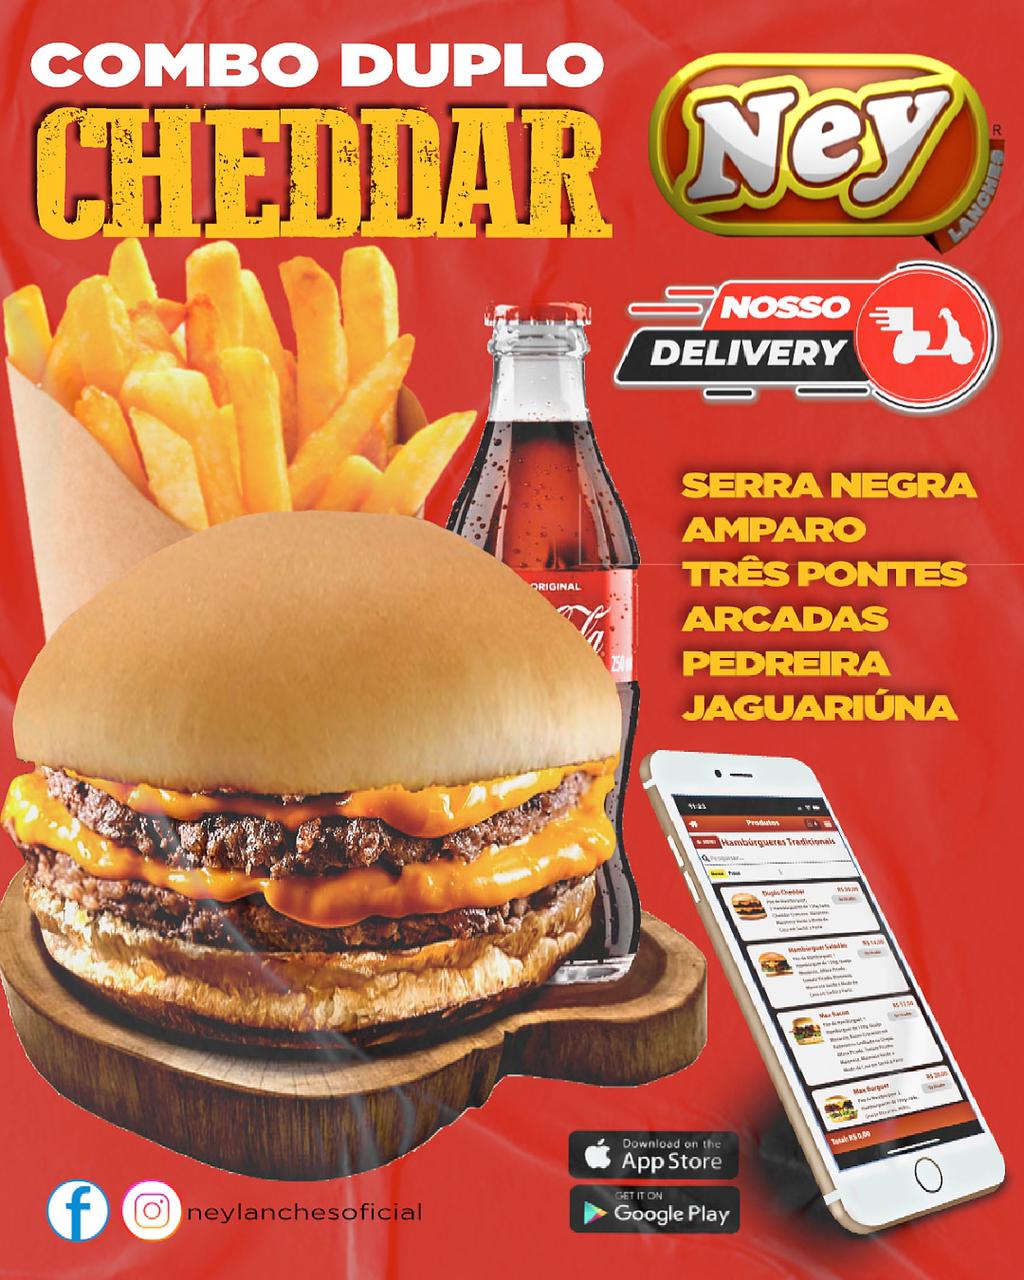 Ney Lanches tem Duplo Cheddar, com batata frita e Coca-Cola 200ml, no combo da sexta-feira